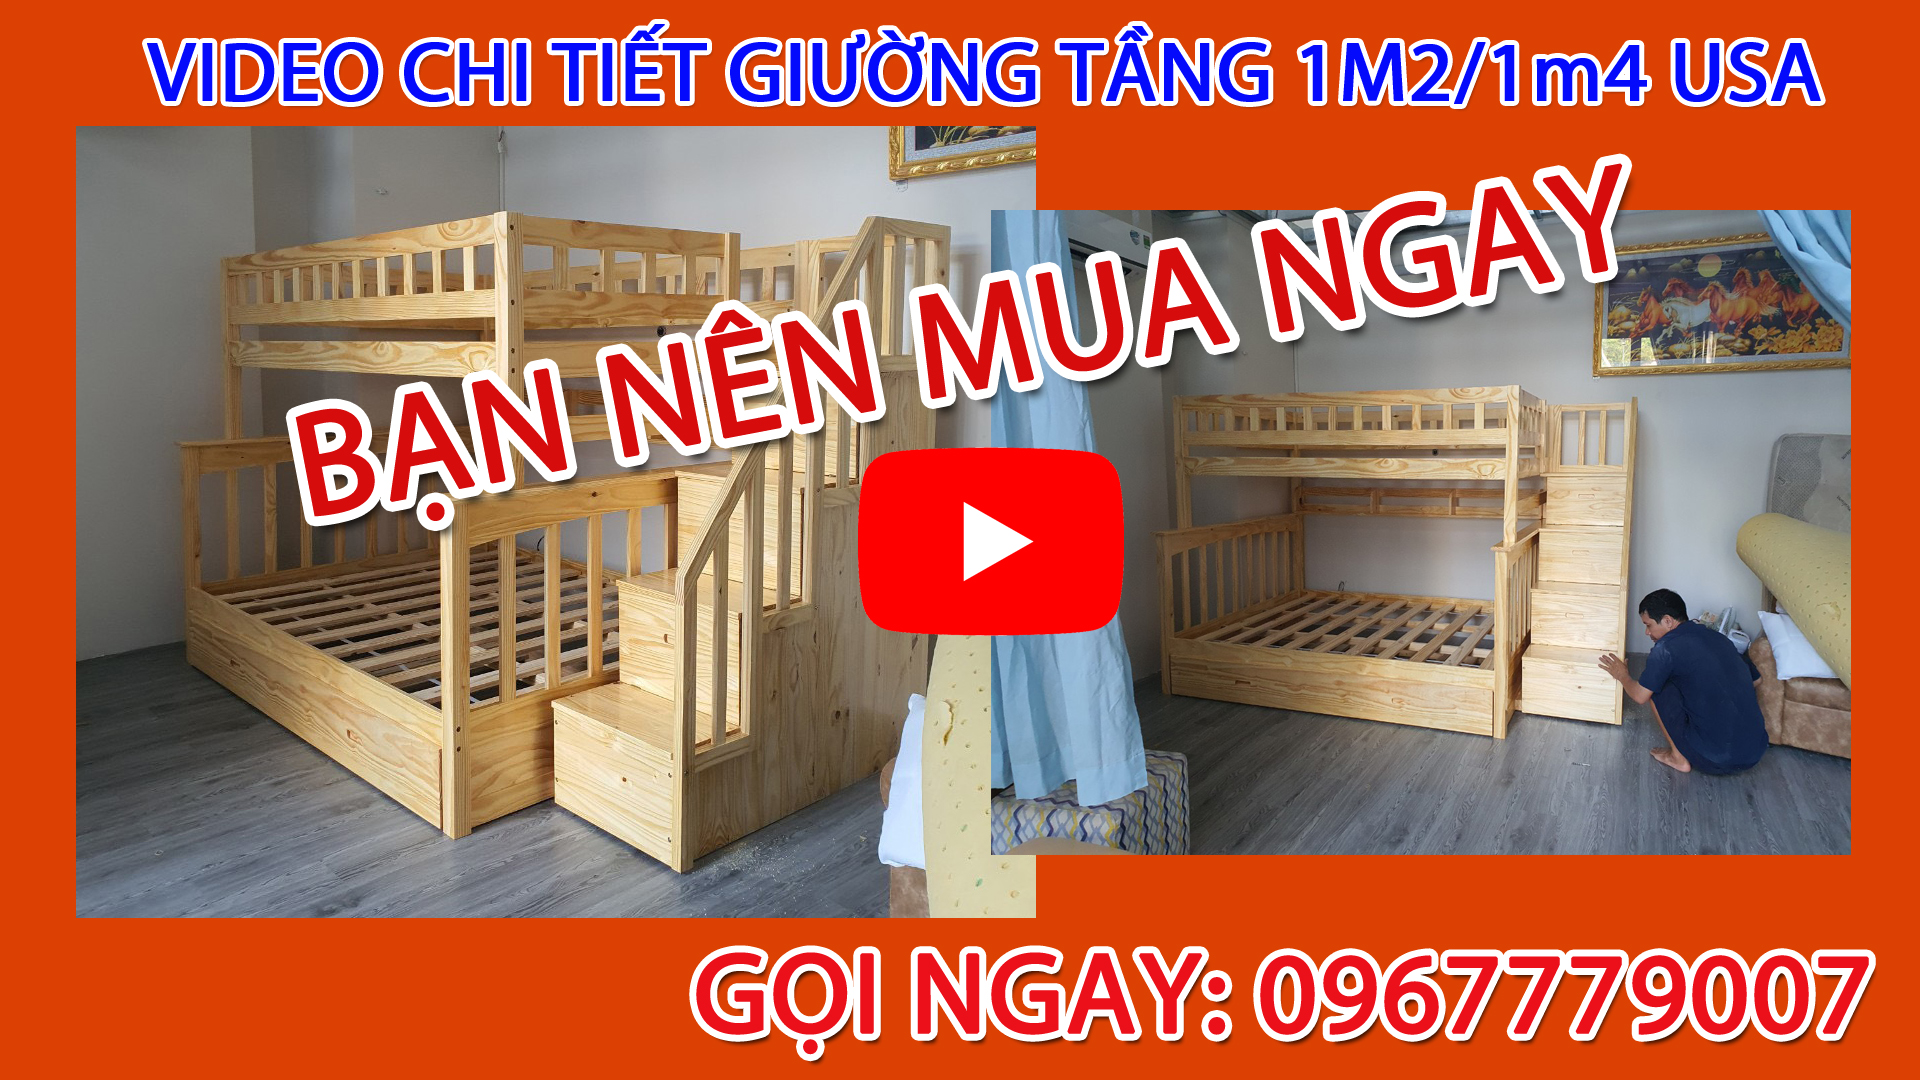 Video cận cảnh thực tế giường tầng 1m2-1m4 USA ĐẸP giá rẻ bạn nên mua nhất TPHCM